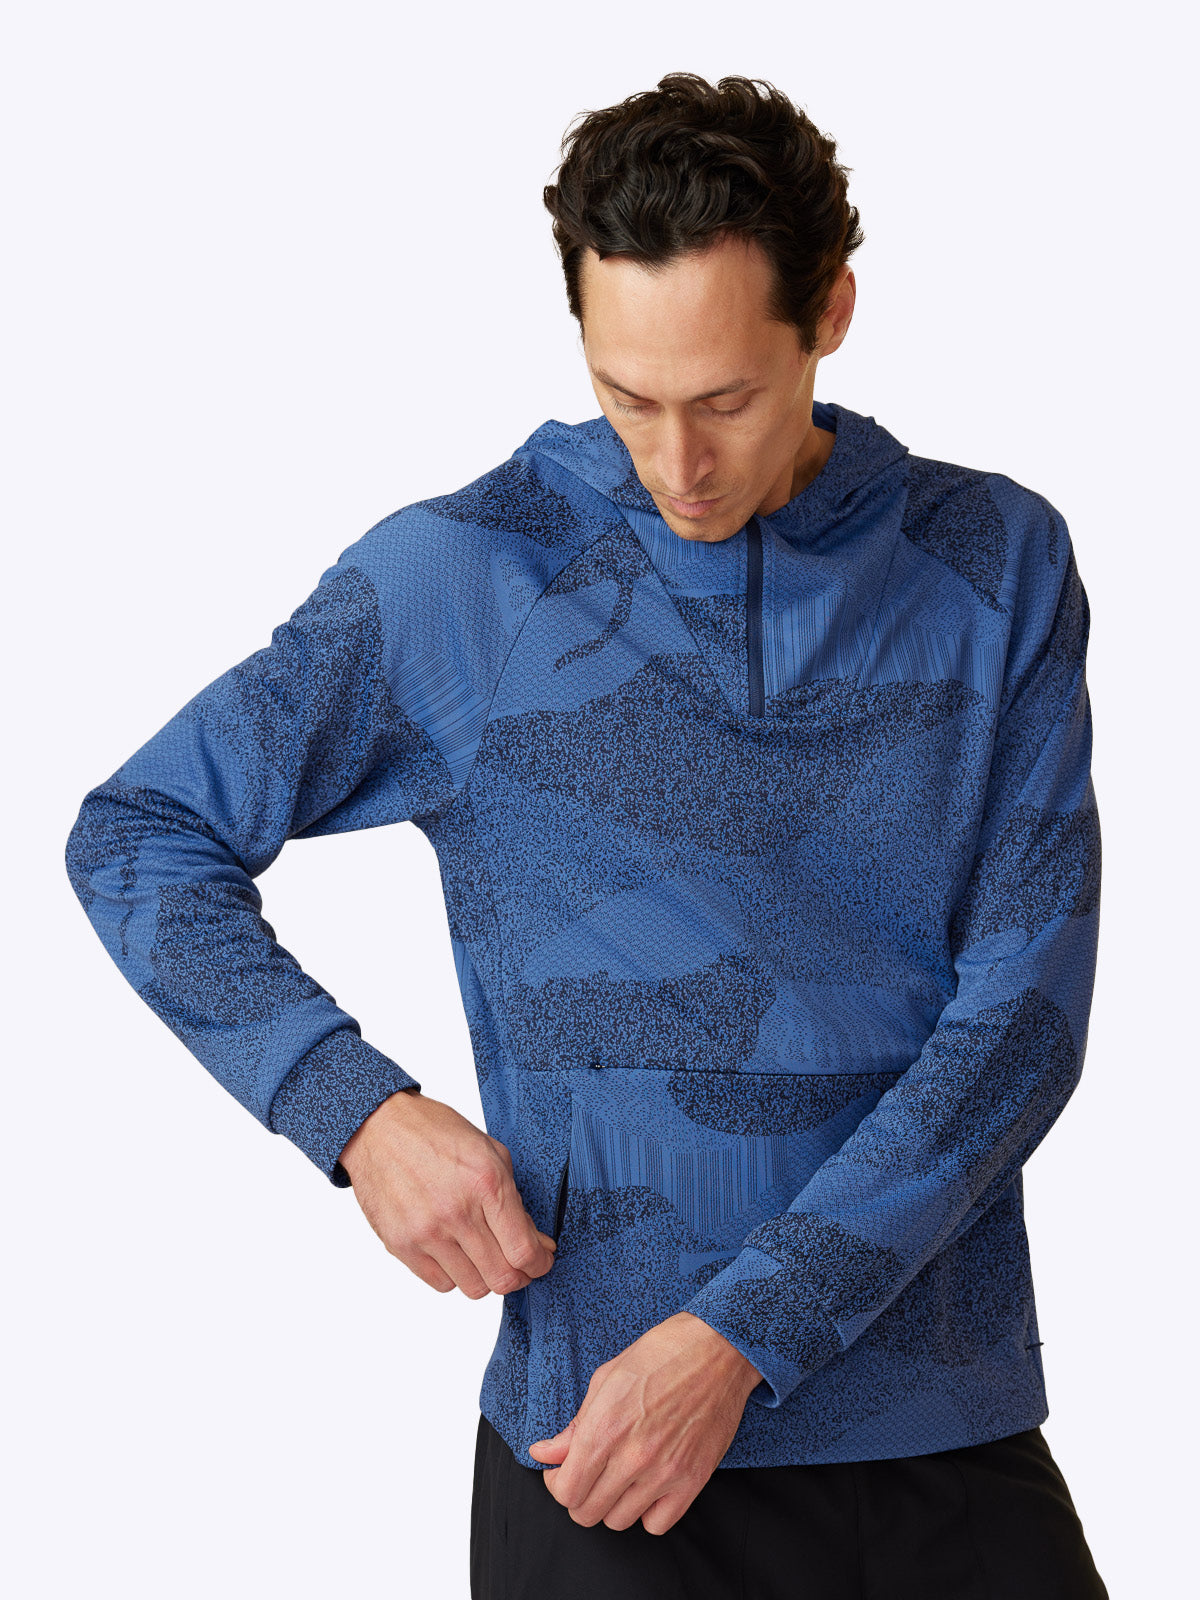 Side profile of Loogaroo Pulse Hoodie in Oceana, revealing the hoodie's sleek design and pocket detail||||Oceana